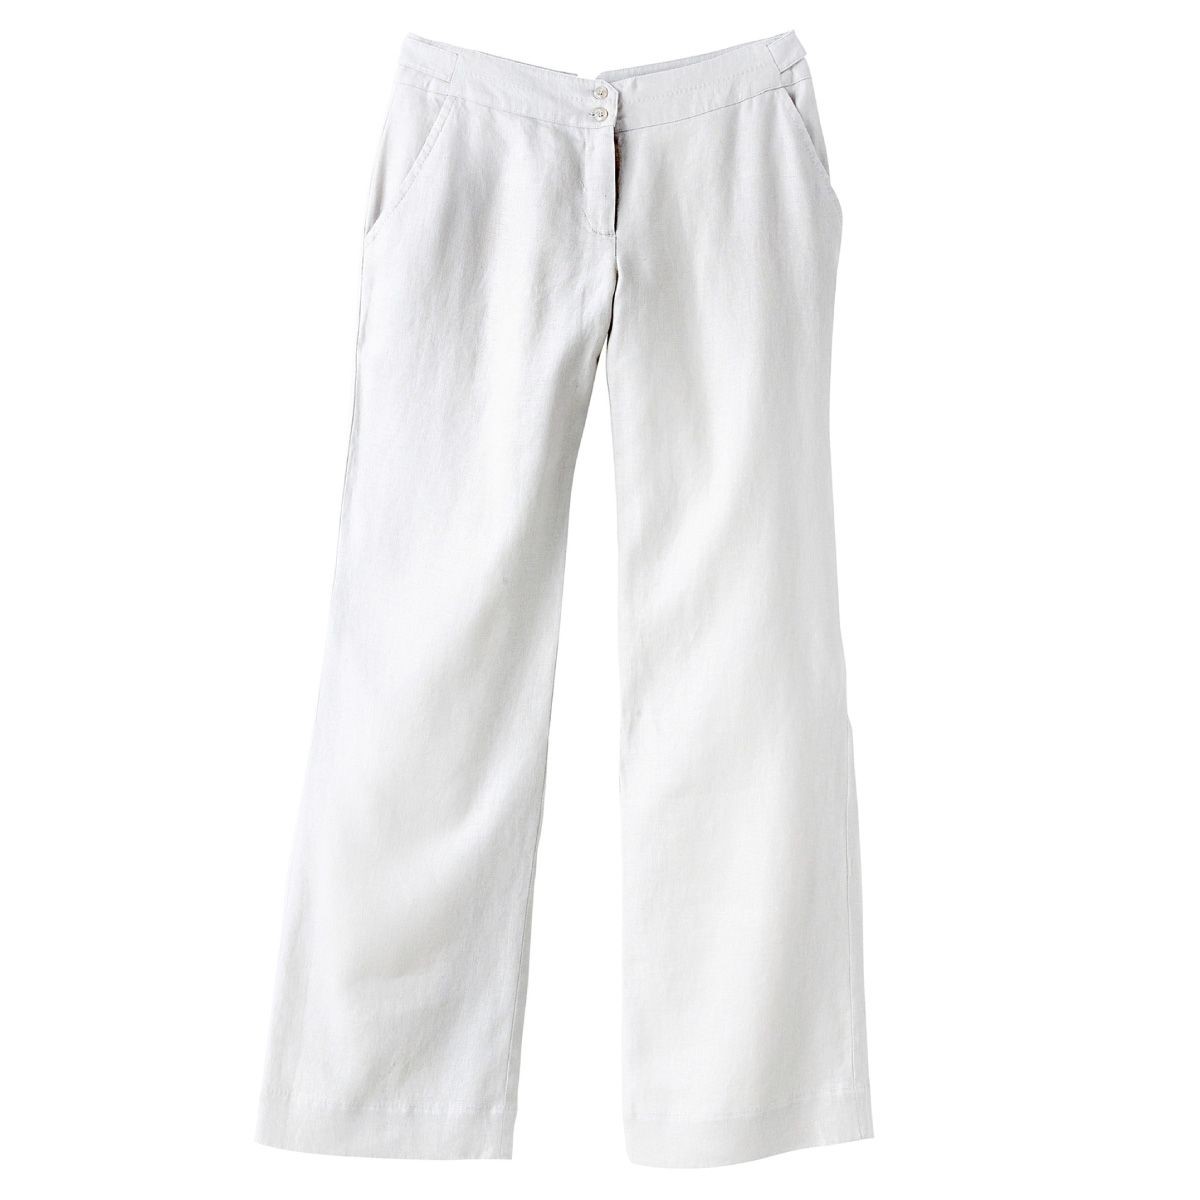 Width 100% linen trousers, low waist